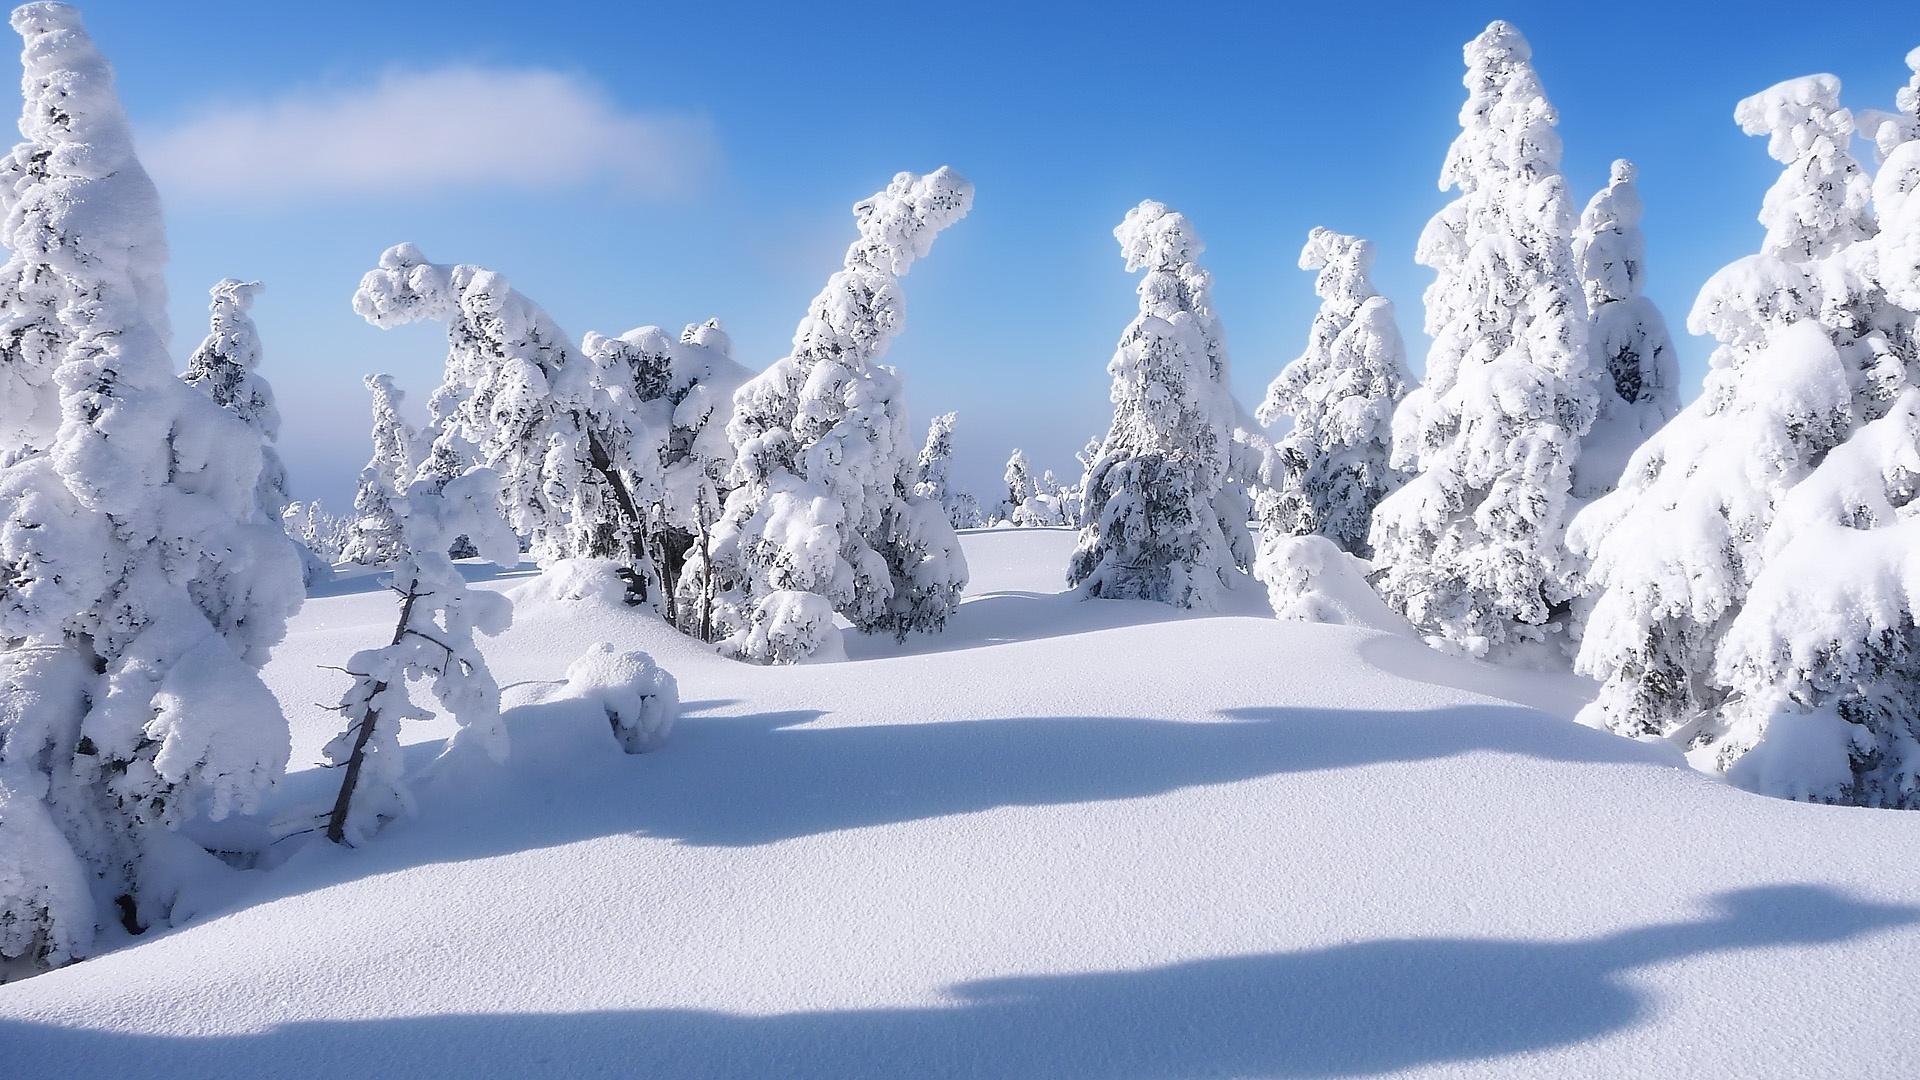 蓝天阳光冬季雪景桌面壁纸-壁纸图片大全